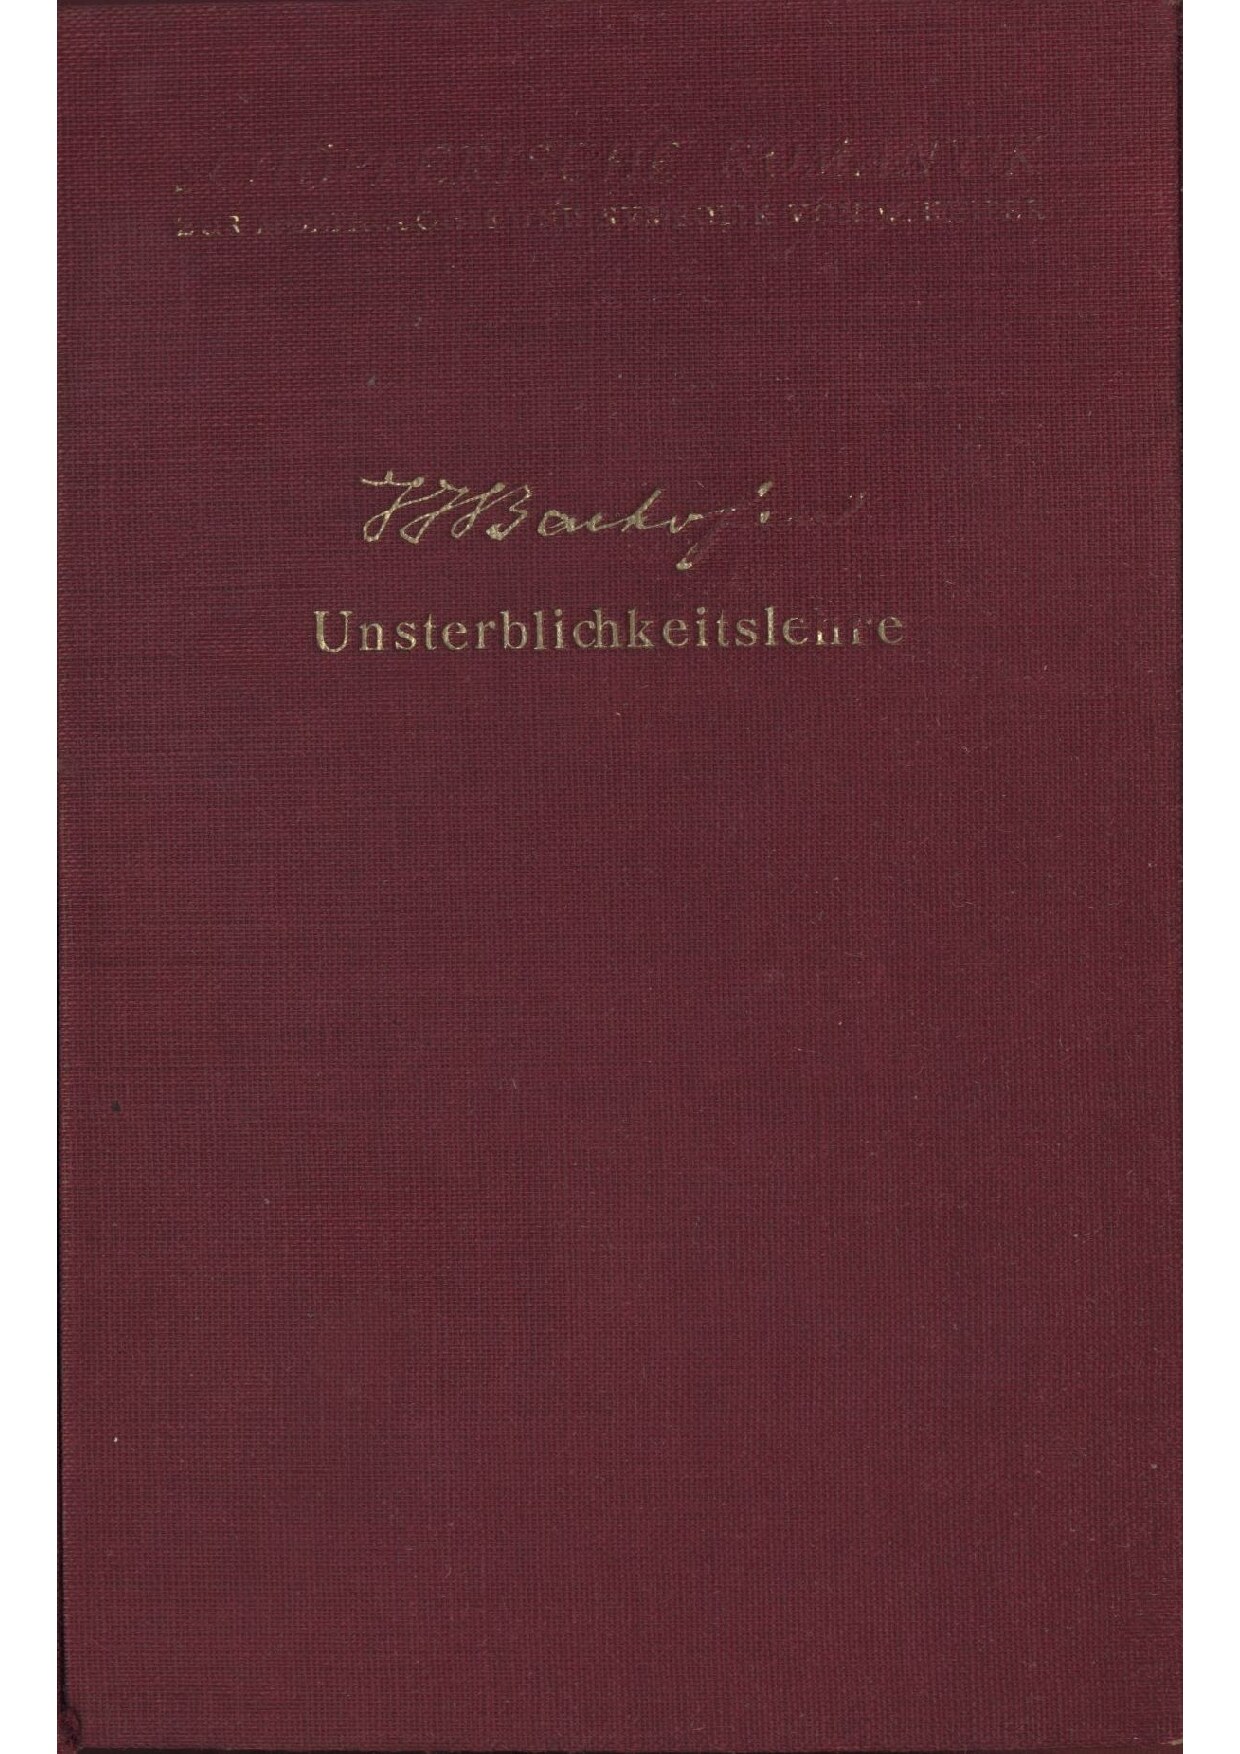 Unsterblichkeitslehre (1867-1938, 328 S., Scan)